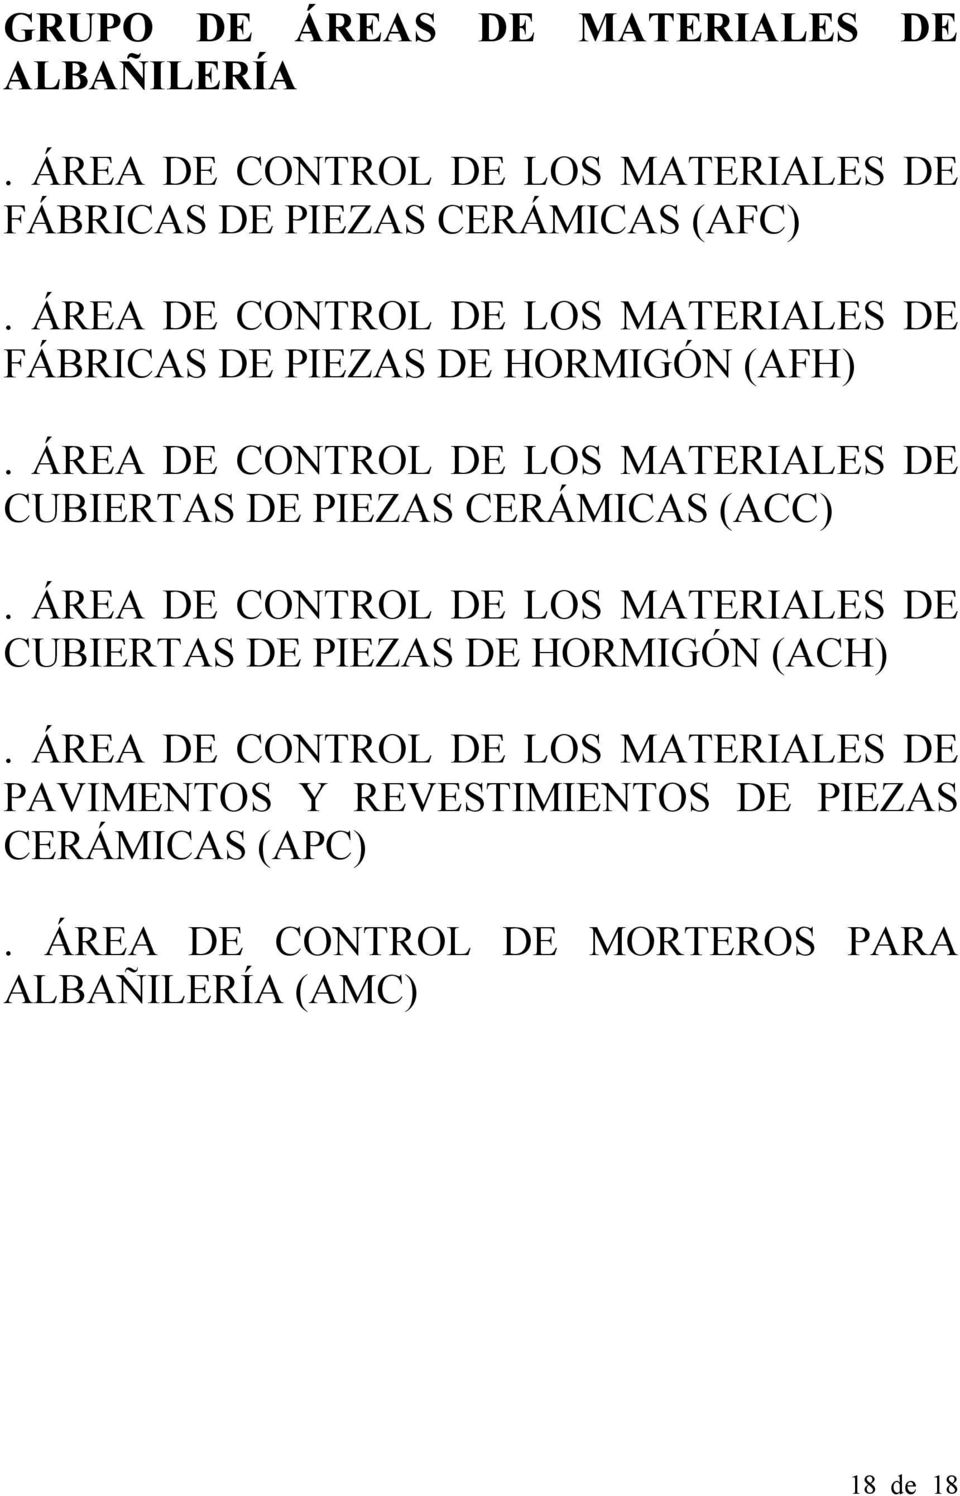 ÁREA DE CONTROL DE LOS MATERIALES DE CUBIERTAS DE PIEZAS CERÁMICAS (ACC).